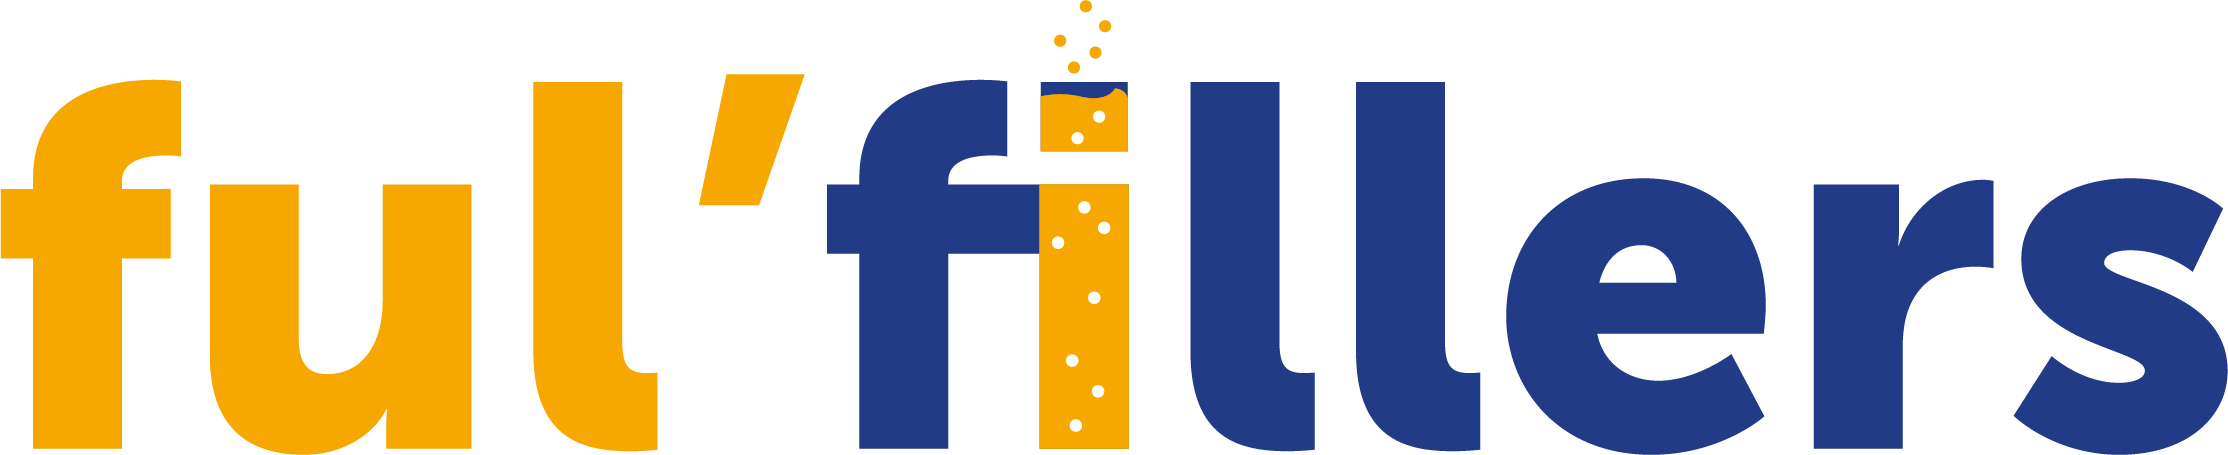 Employer branding logo ful'fillers